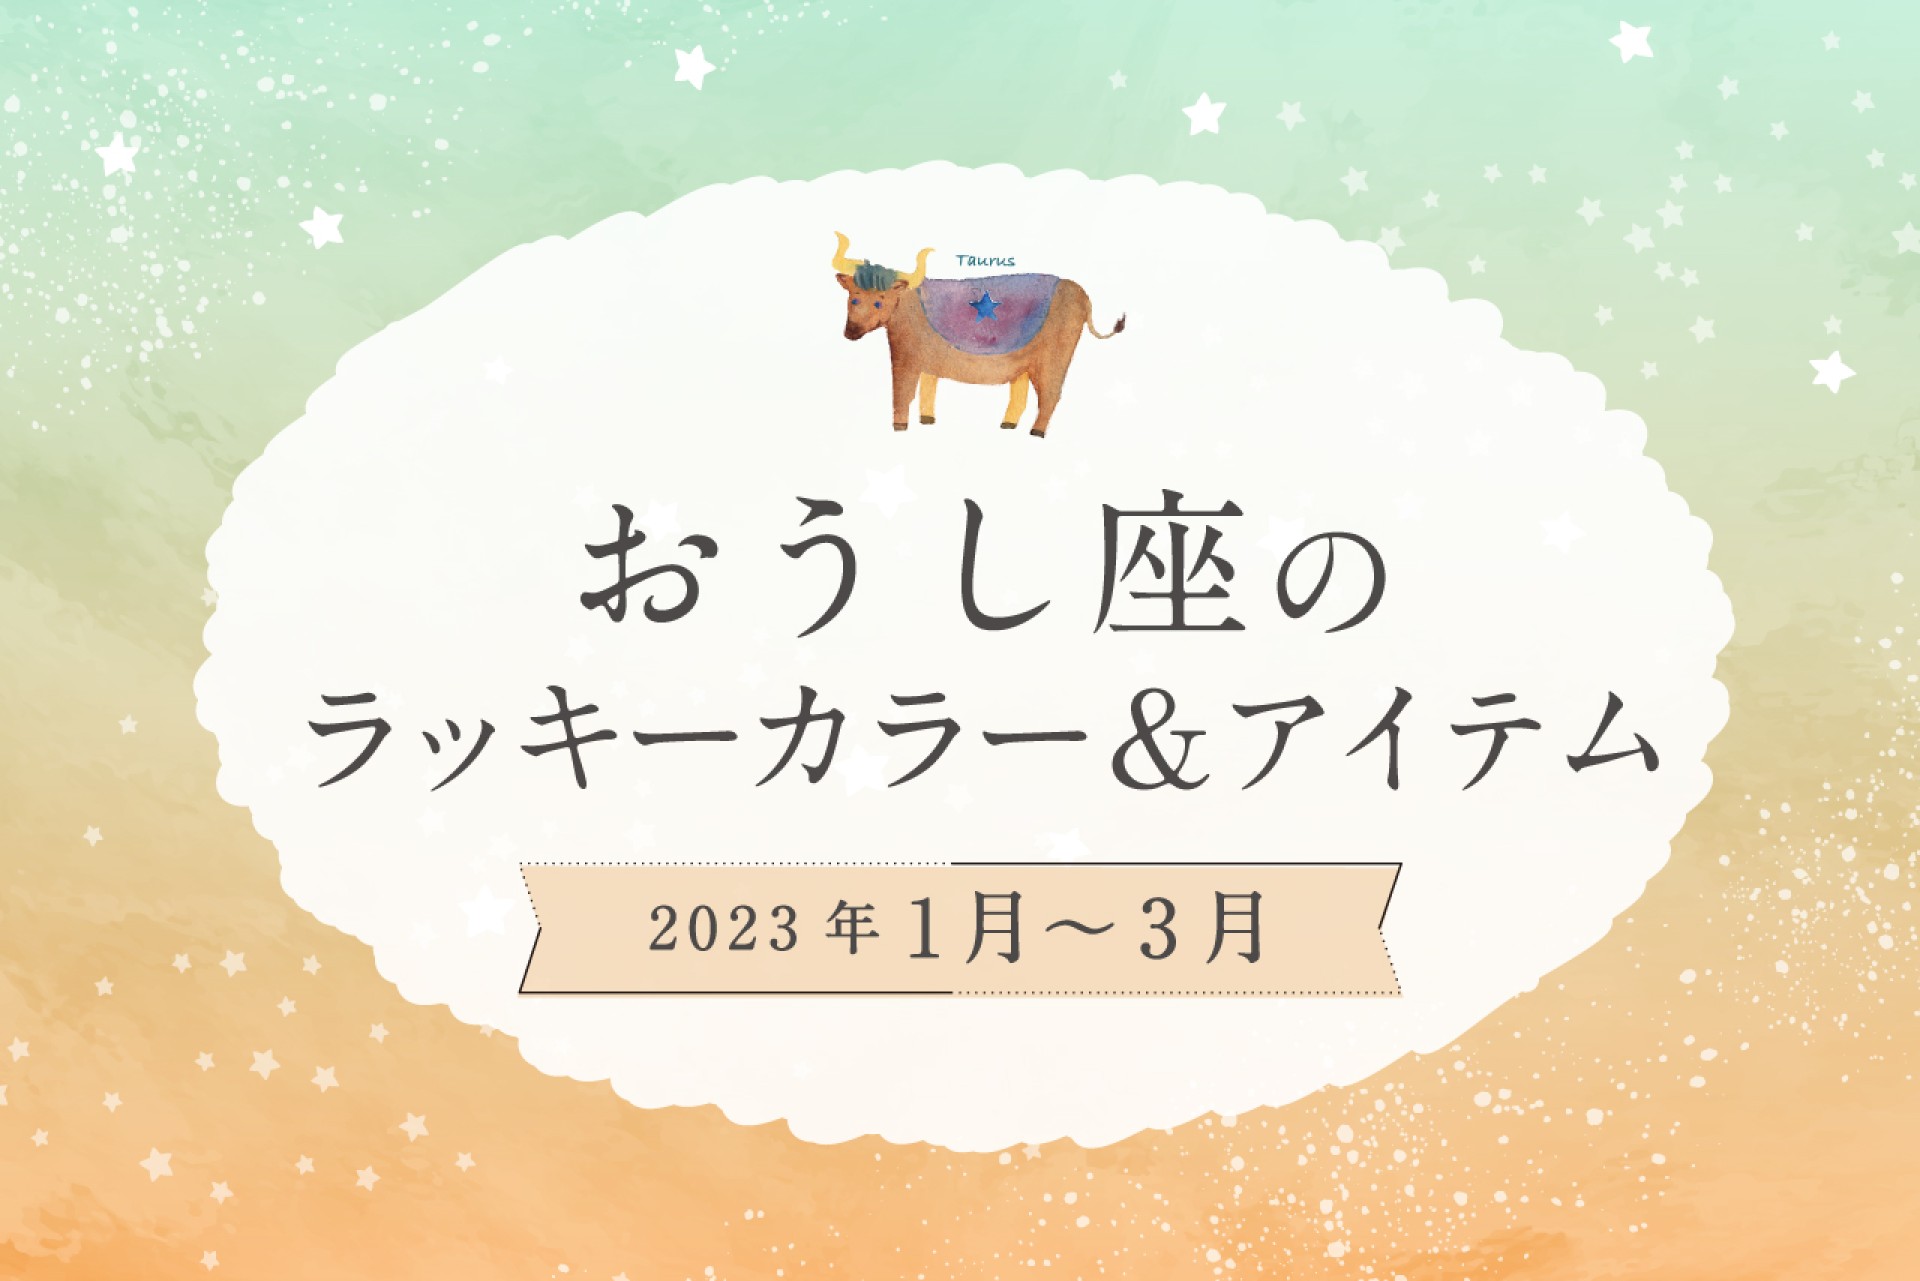 おうし座のラッキーカラーとラッキーアイテム【2022年1月・2月・3月】